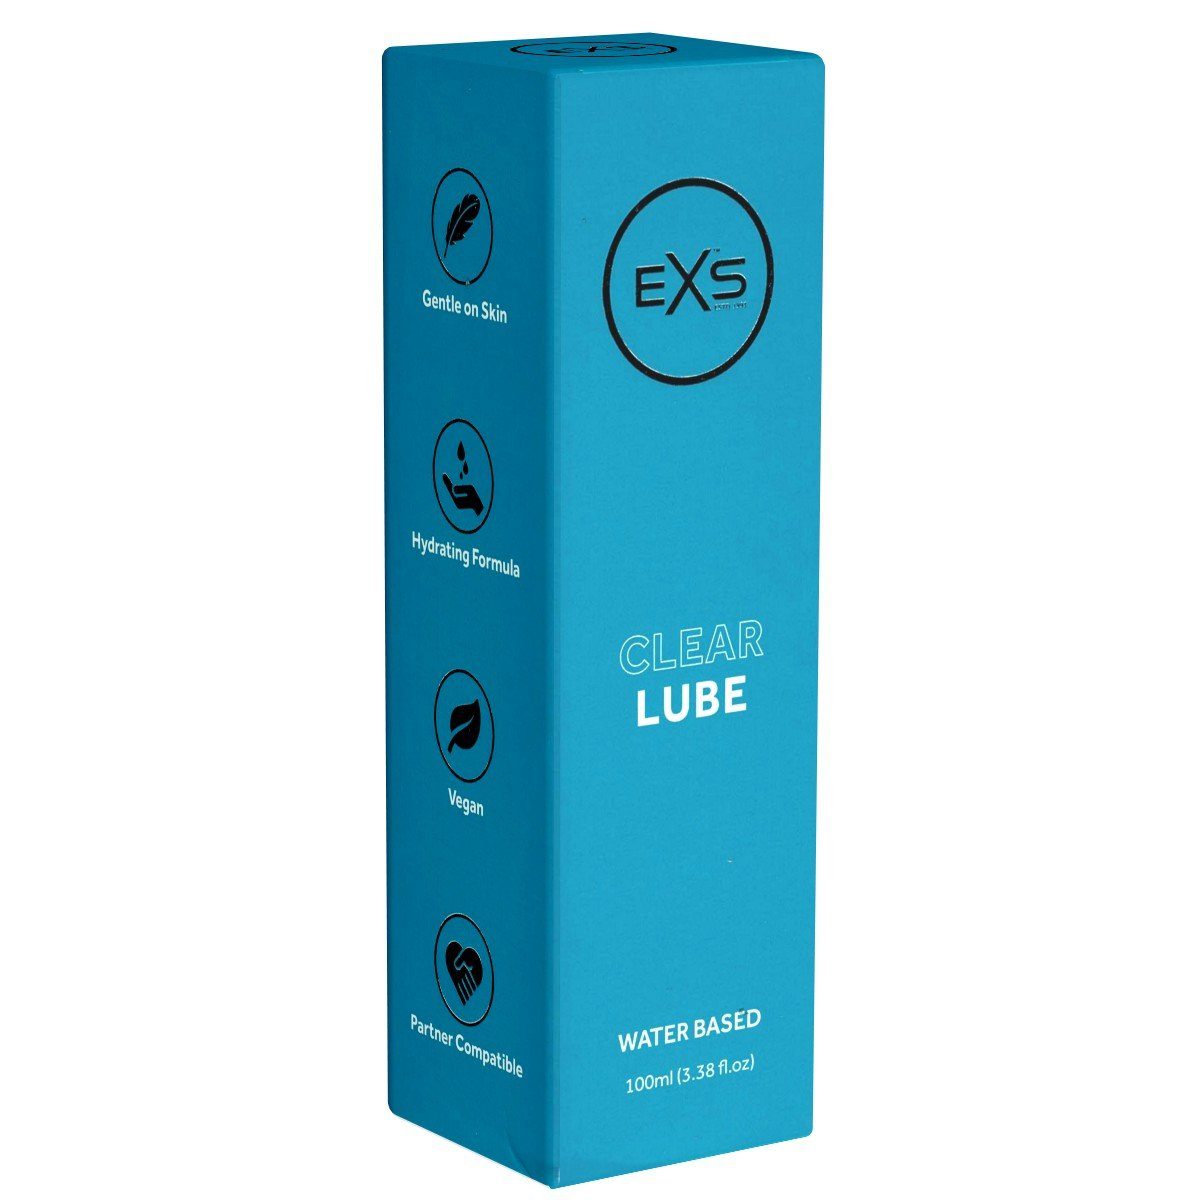 EXS Gleitgel Clear Lube transparent, - mit Gleitgel, hypoallergen, lange 100ml, gleitfähig Flasche parabenfreies